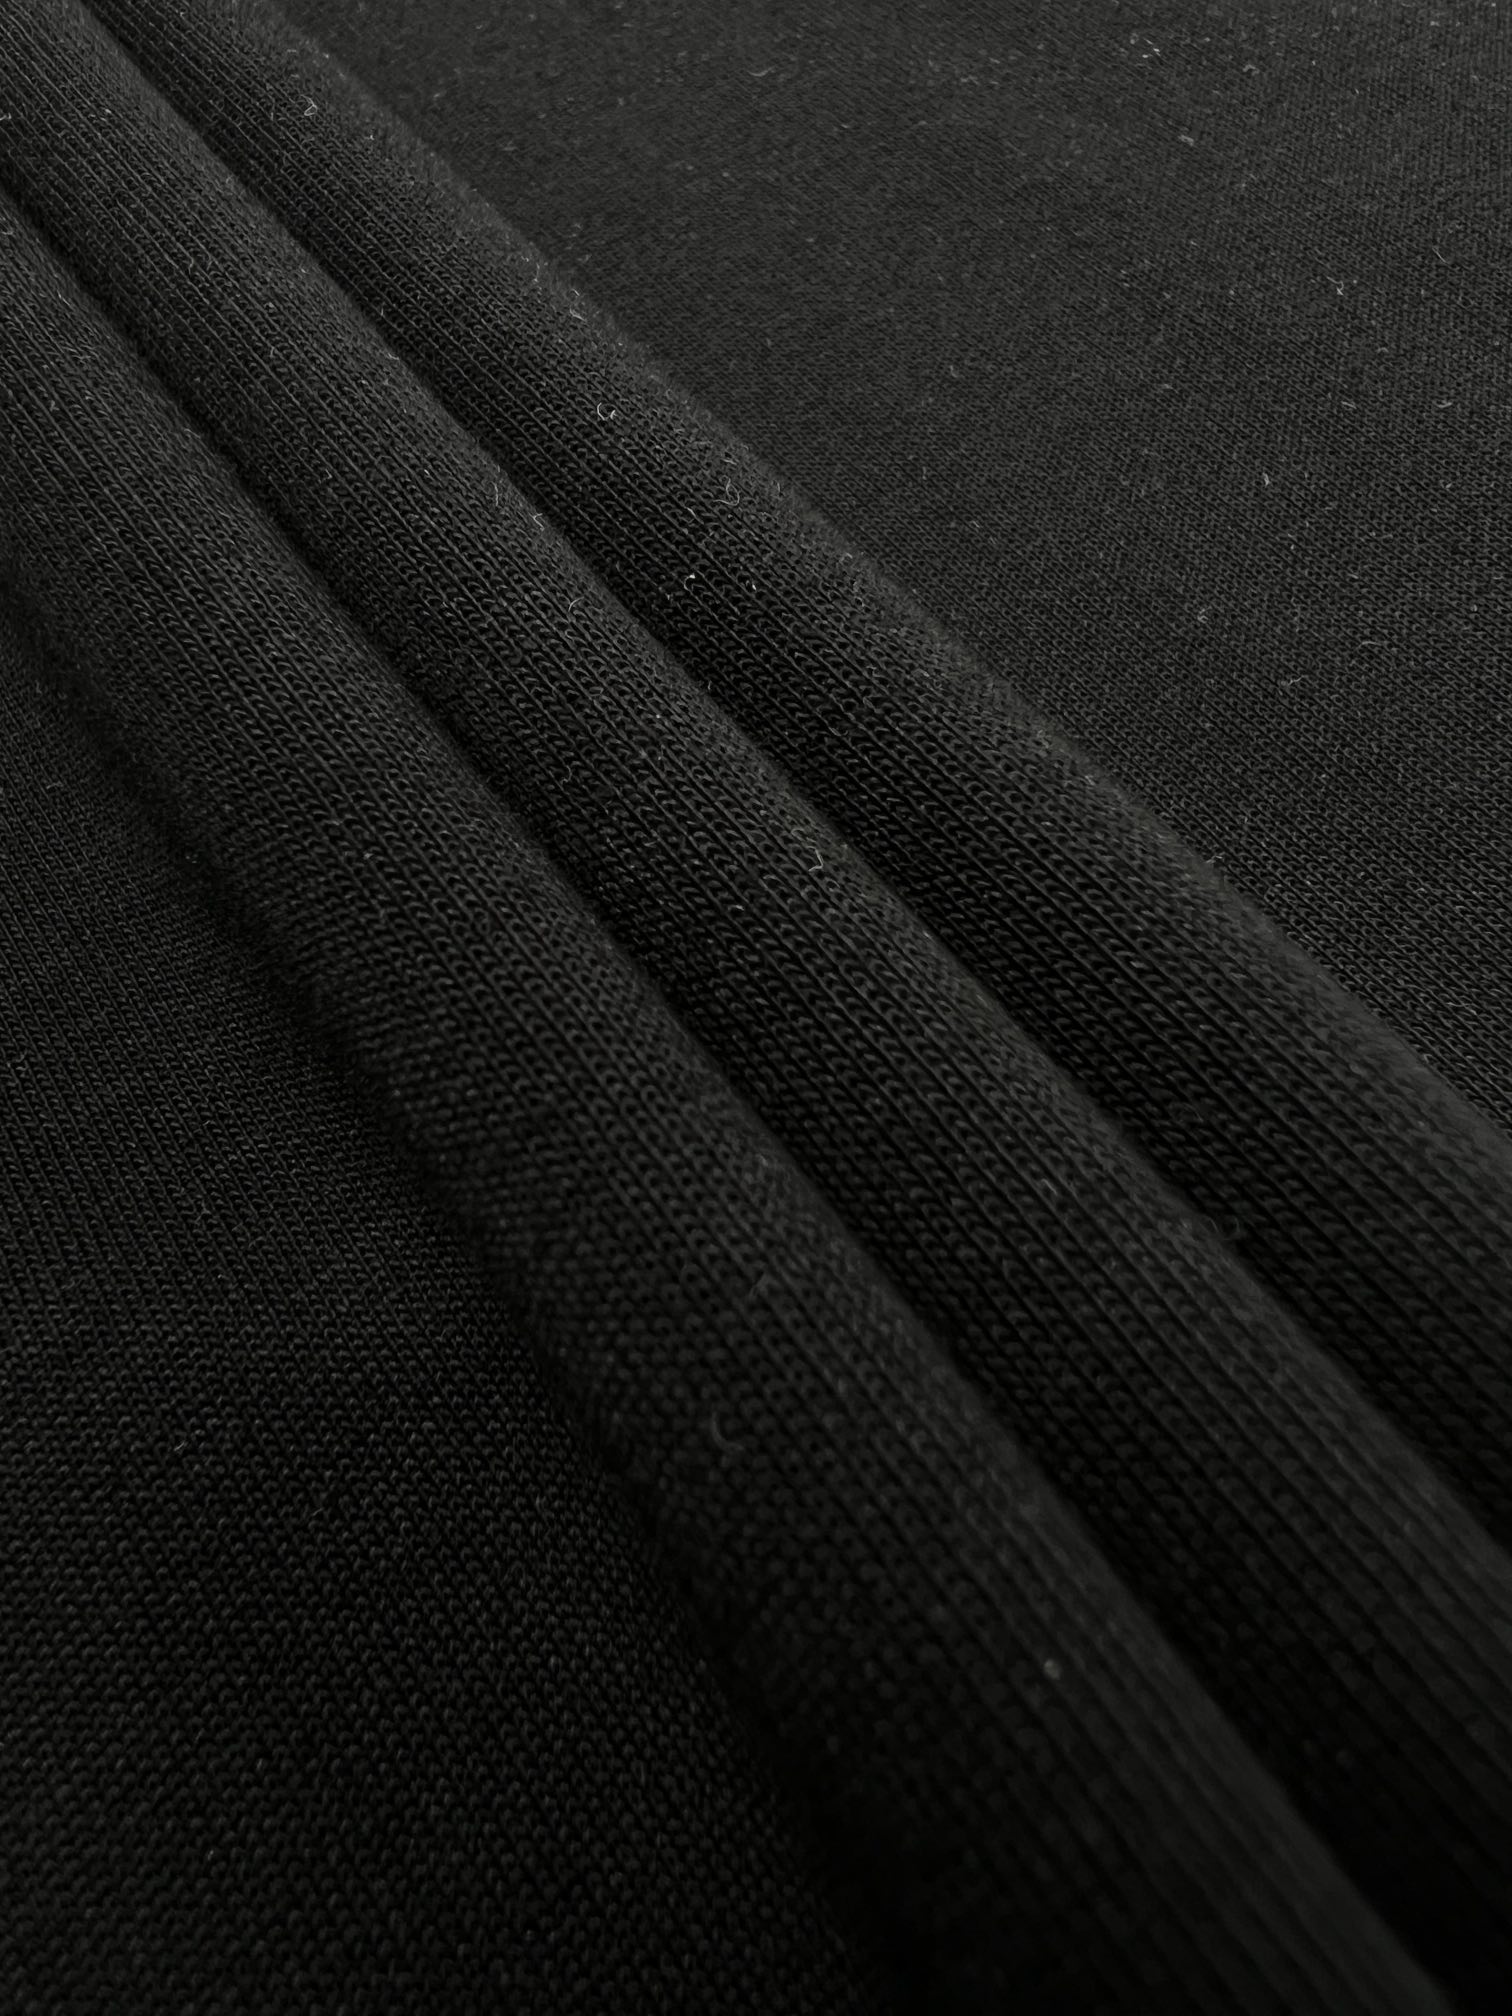 Fendi工匠短袖面料采用260克全棉双面面料手感柔软舒适亲肤搭配胸前8种不同“工具”图标富有内涵的独特